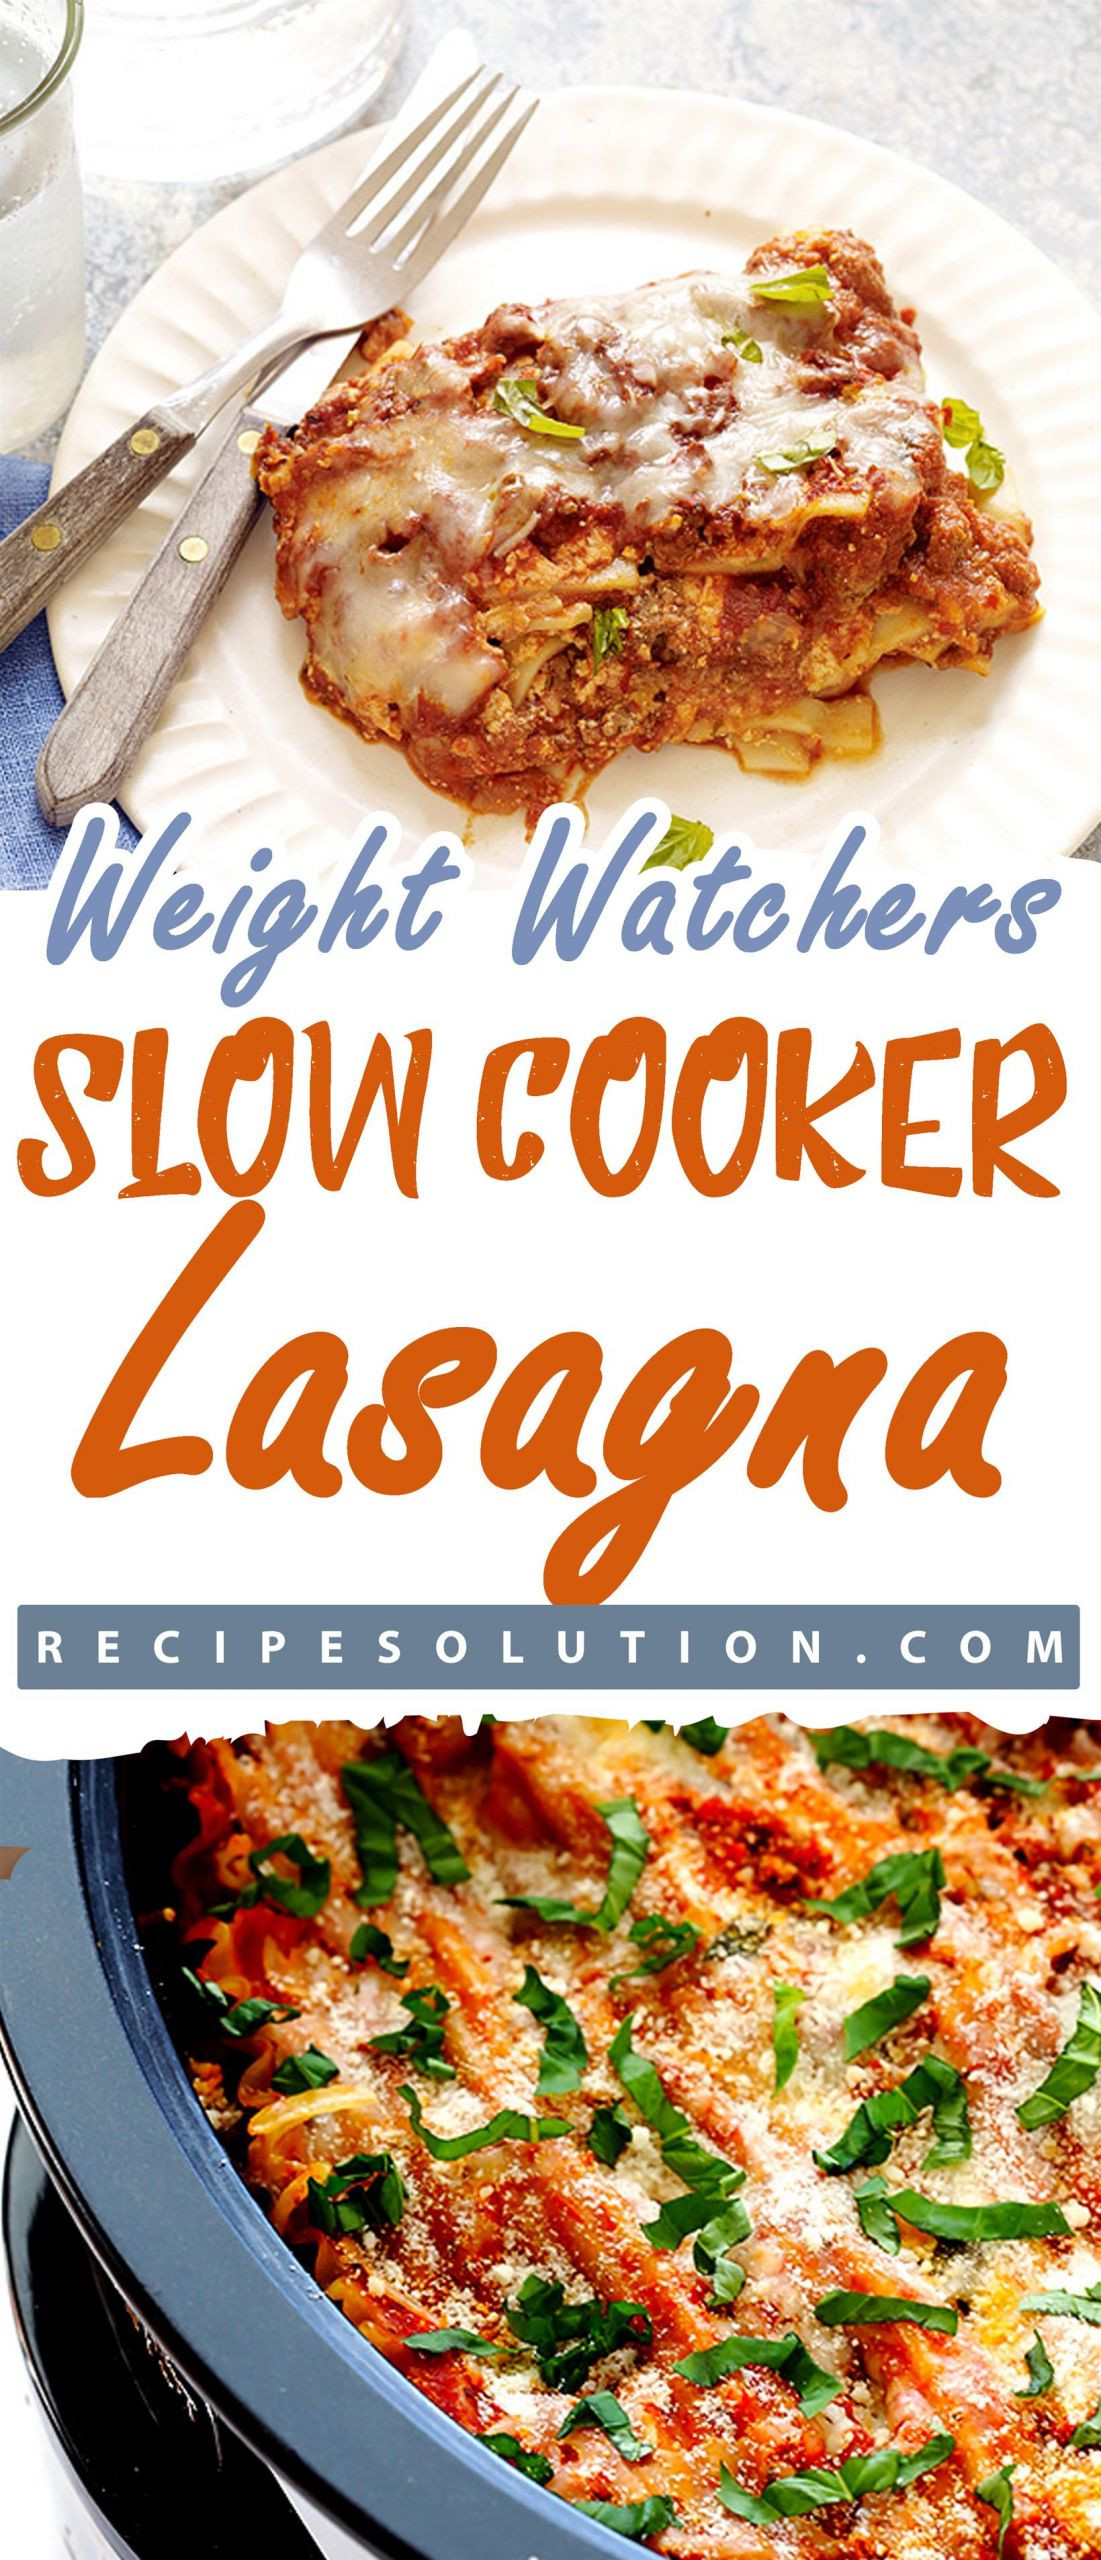 Weight Watcher Slow Cooker Lasagna
 21 the Best Ideas for Weight Watchers Slow Cooker